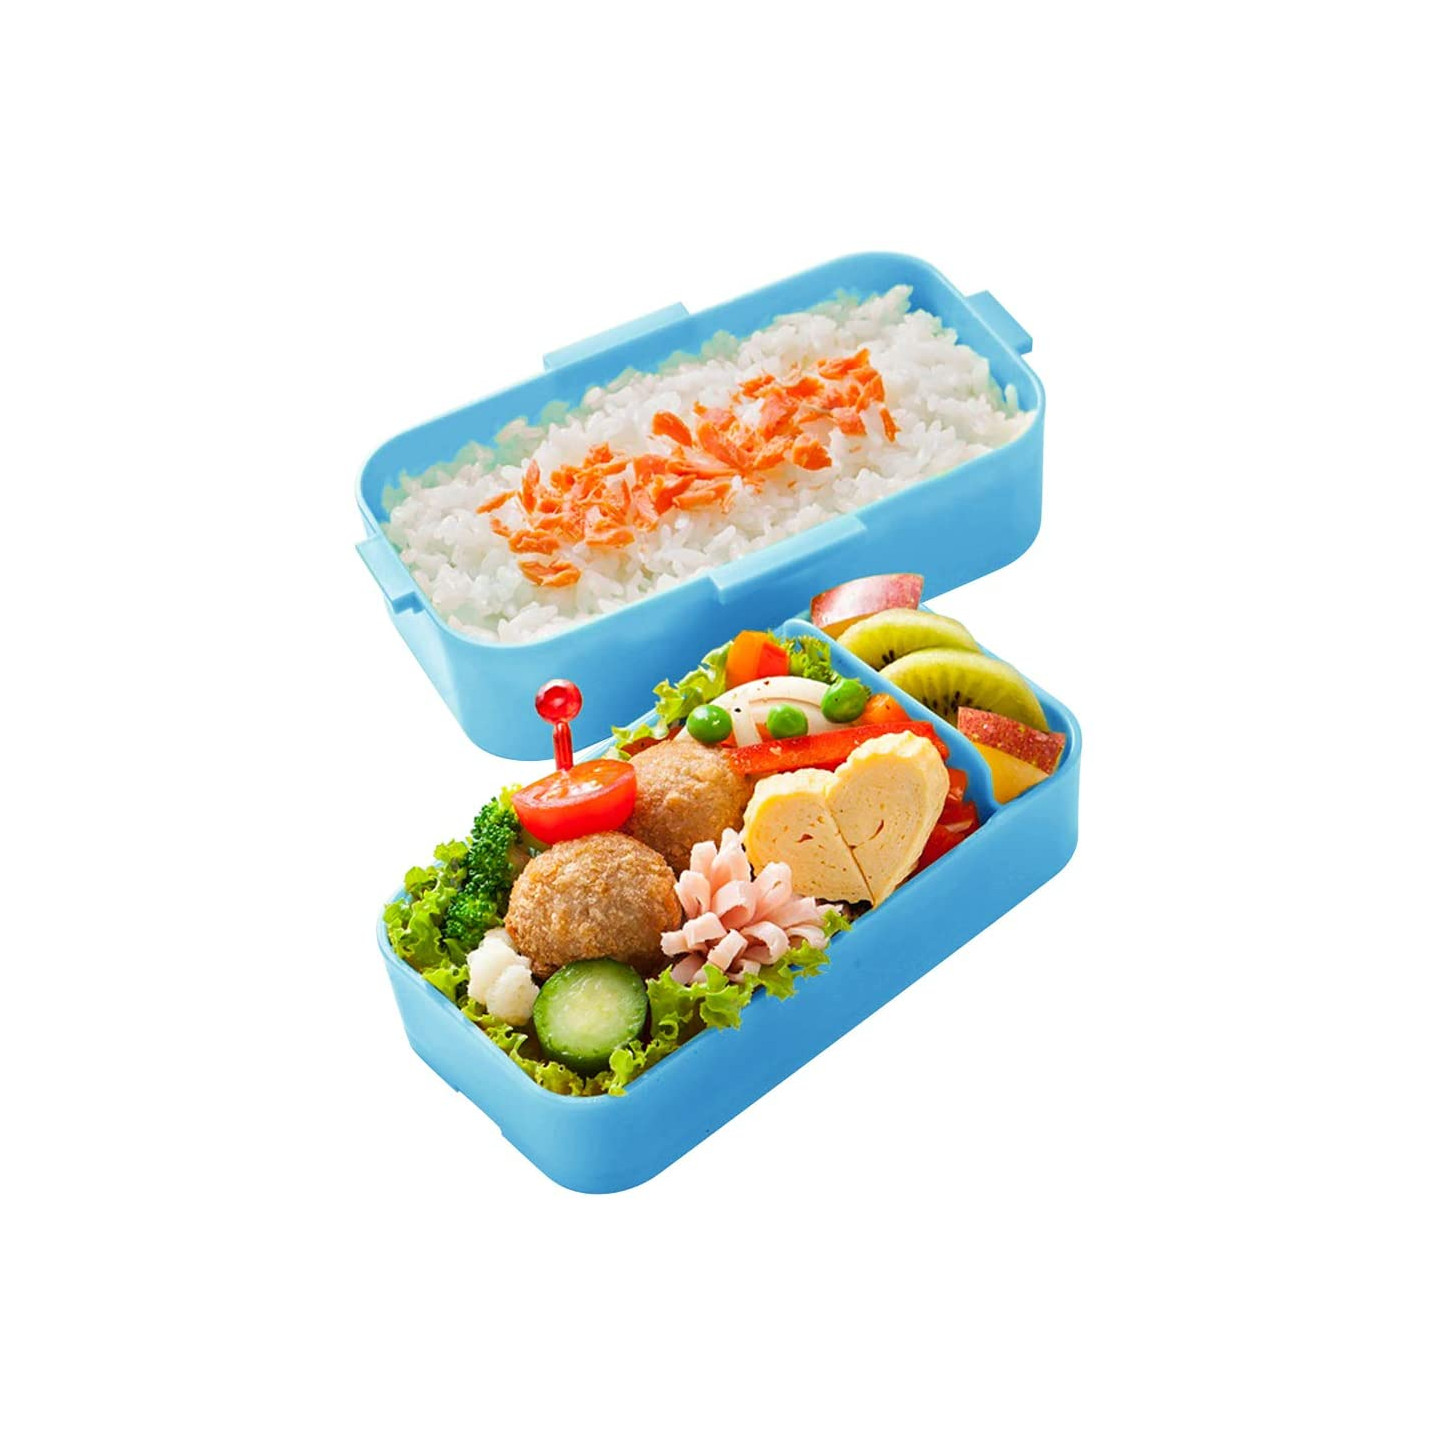 Sanrio Lunch Box Pochacco